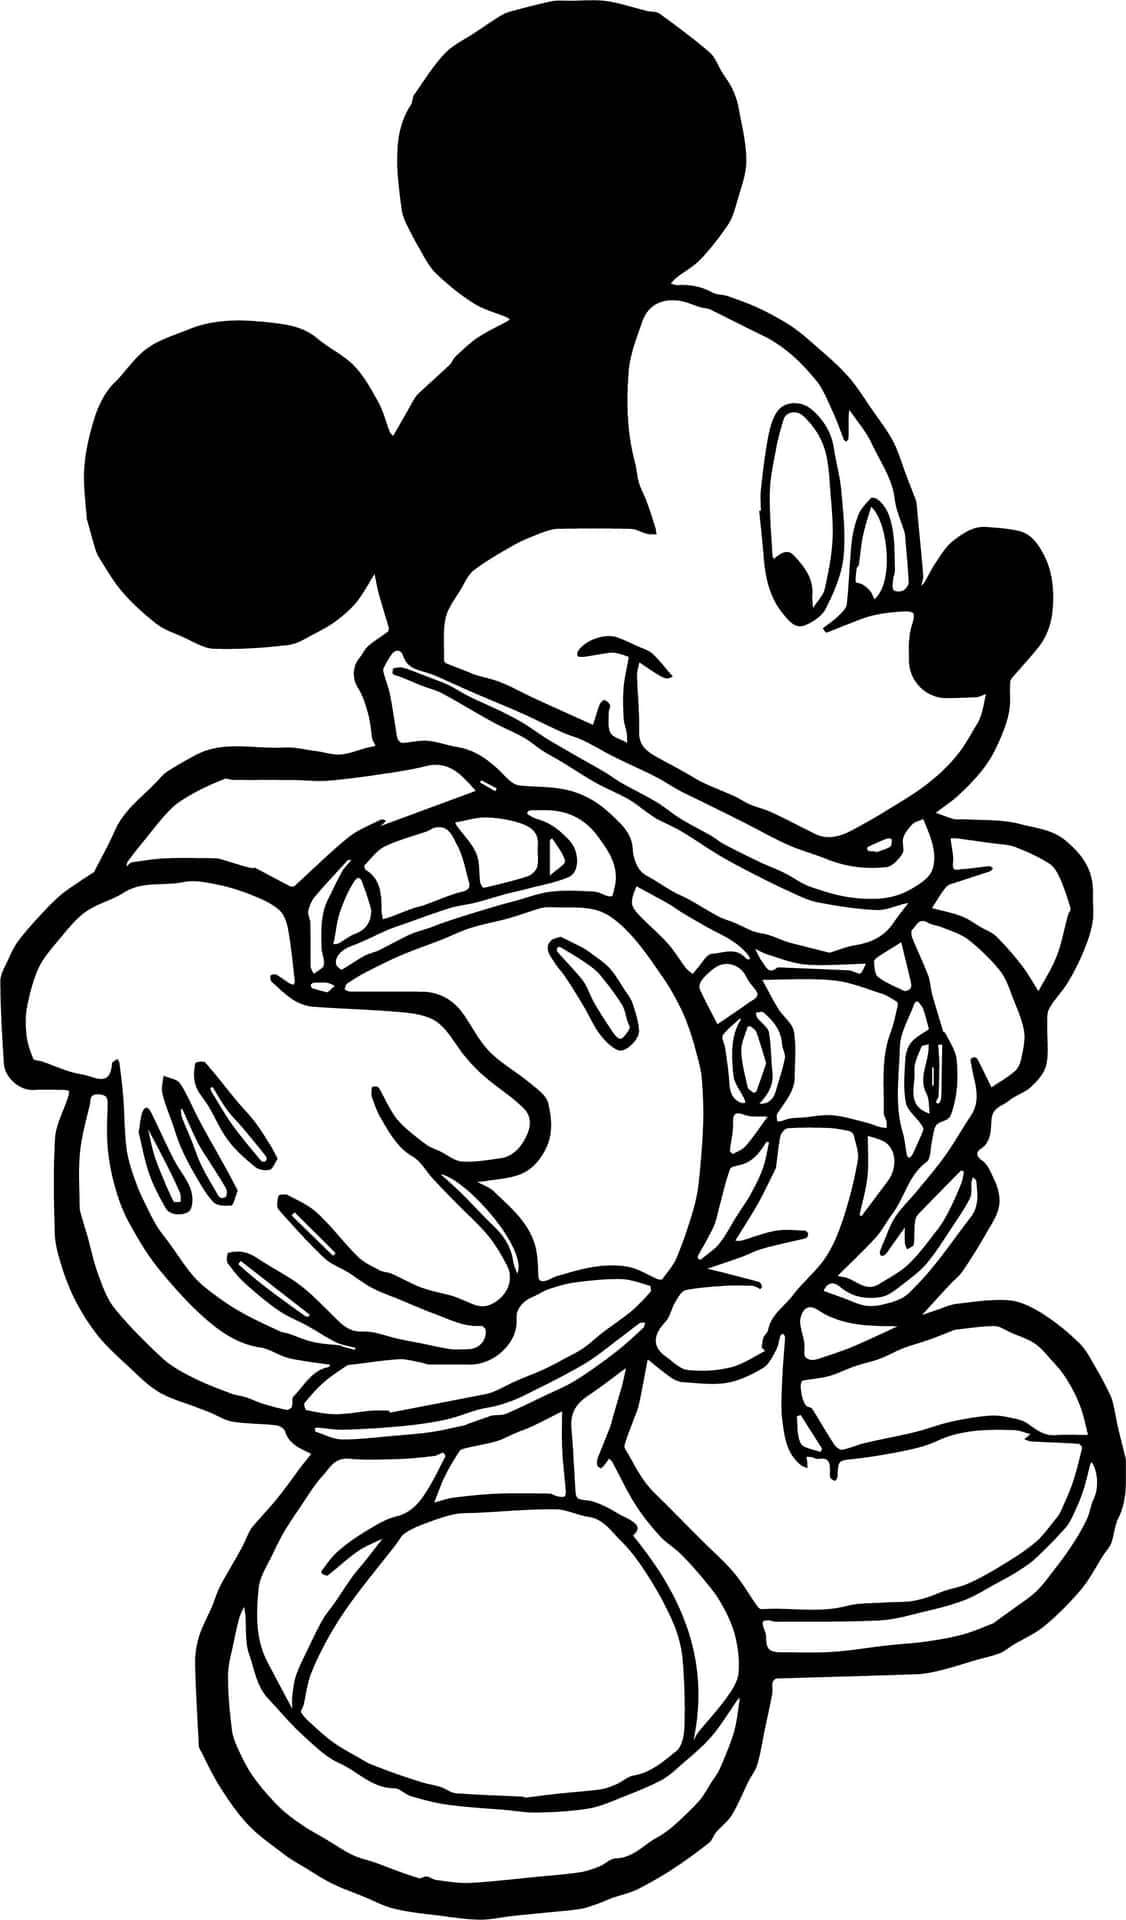 Colorail Tuo Personaggio Disney Preferito Con Questa Paginetta Da Colorare Di Topolino.